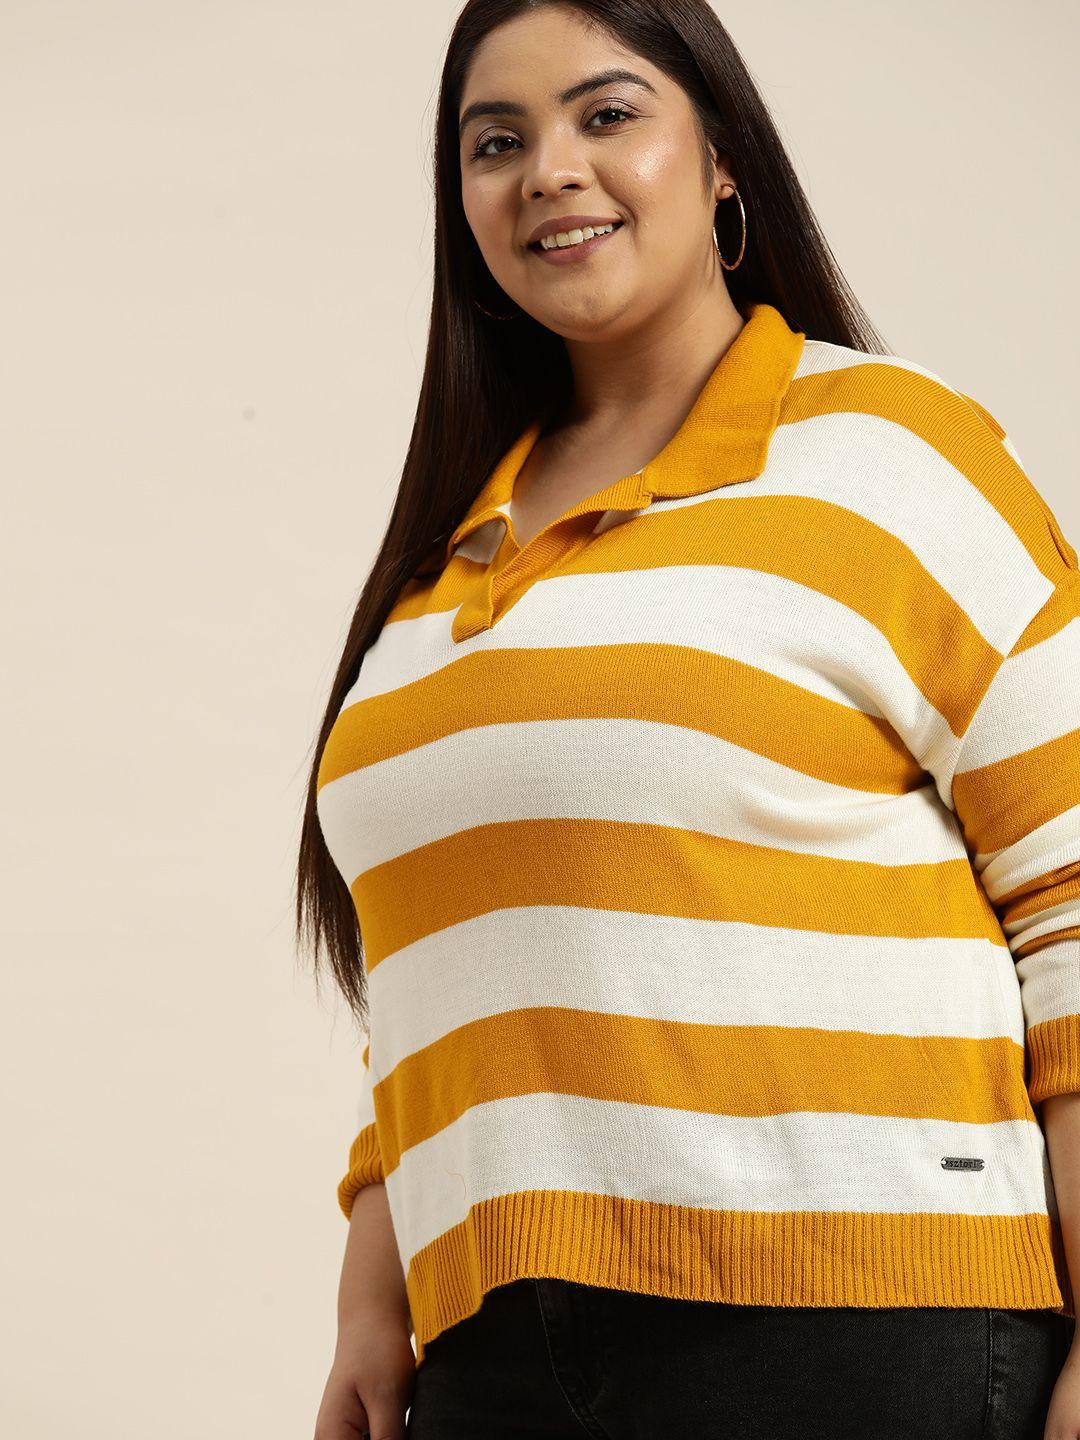 sztori women plus size yellow & white striped sweater